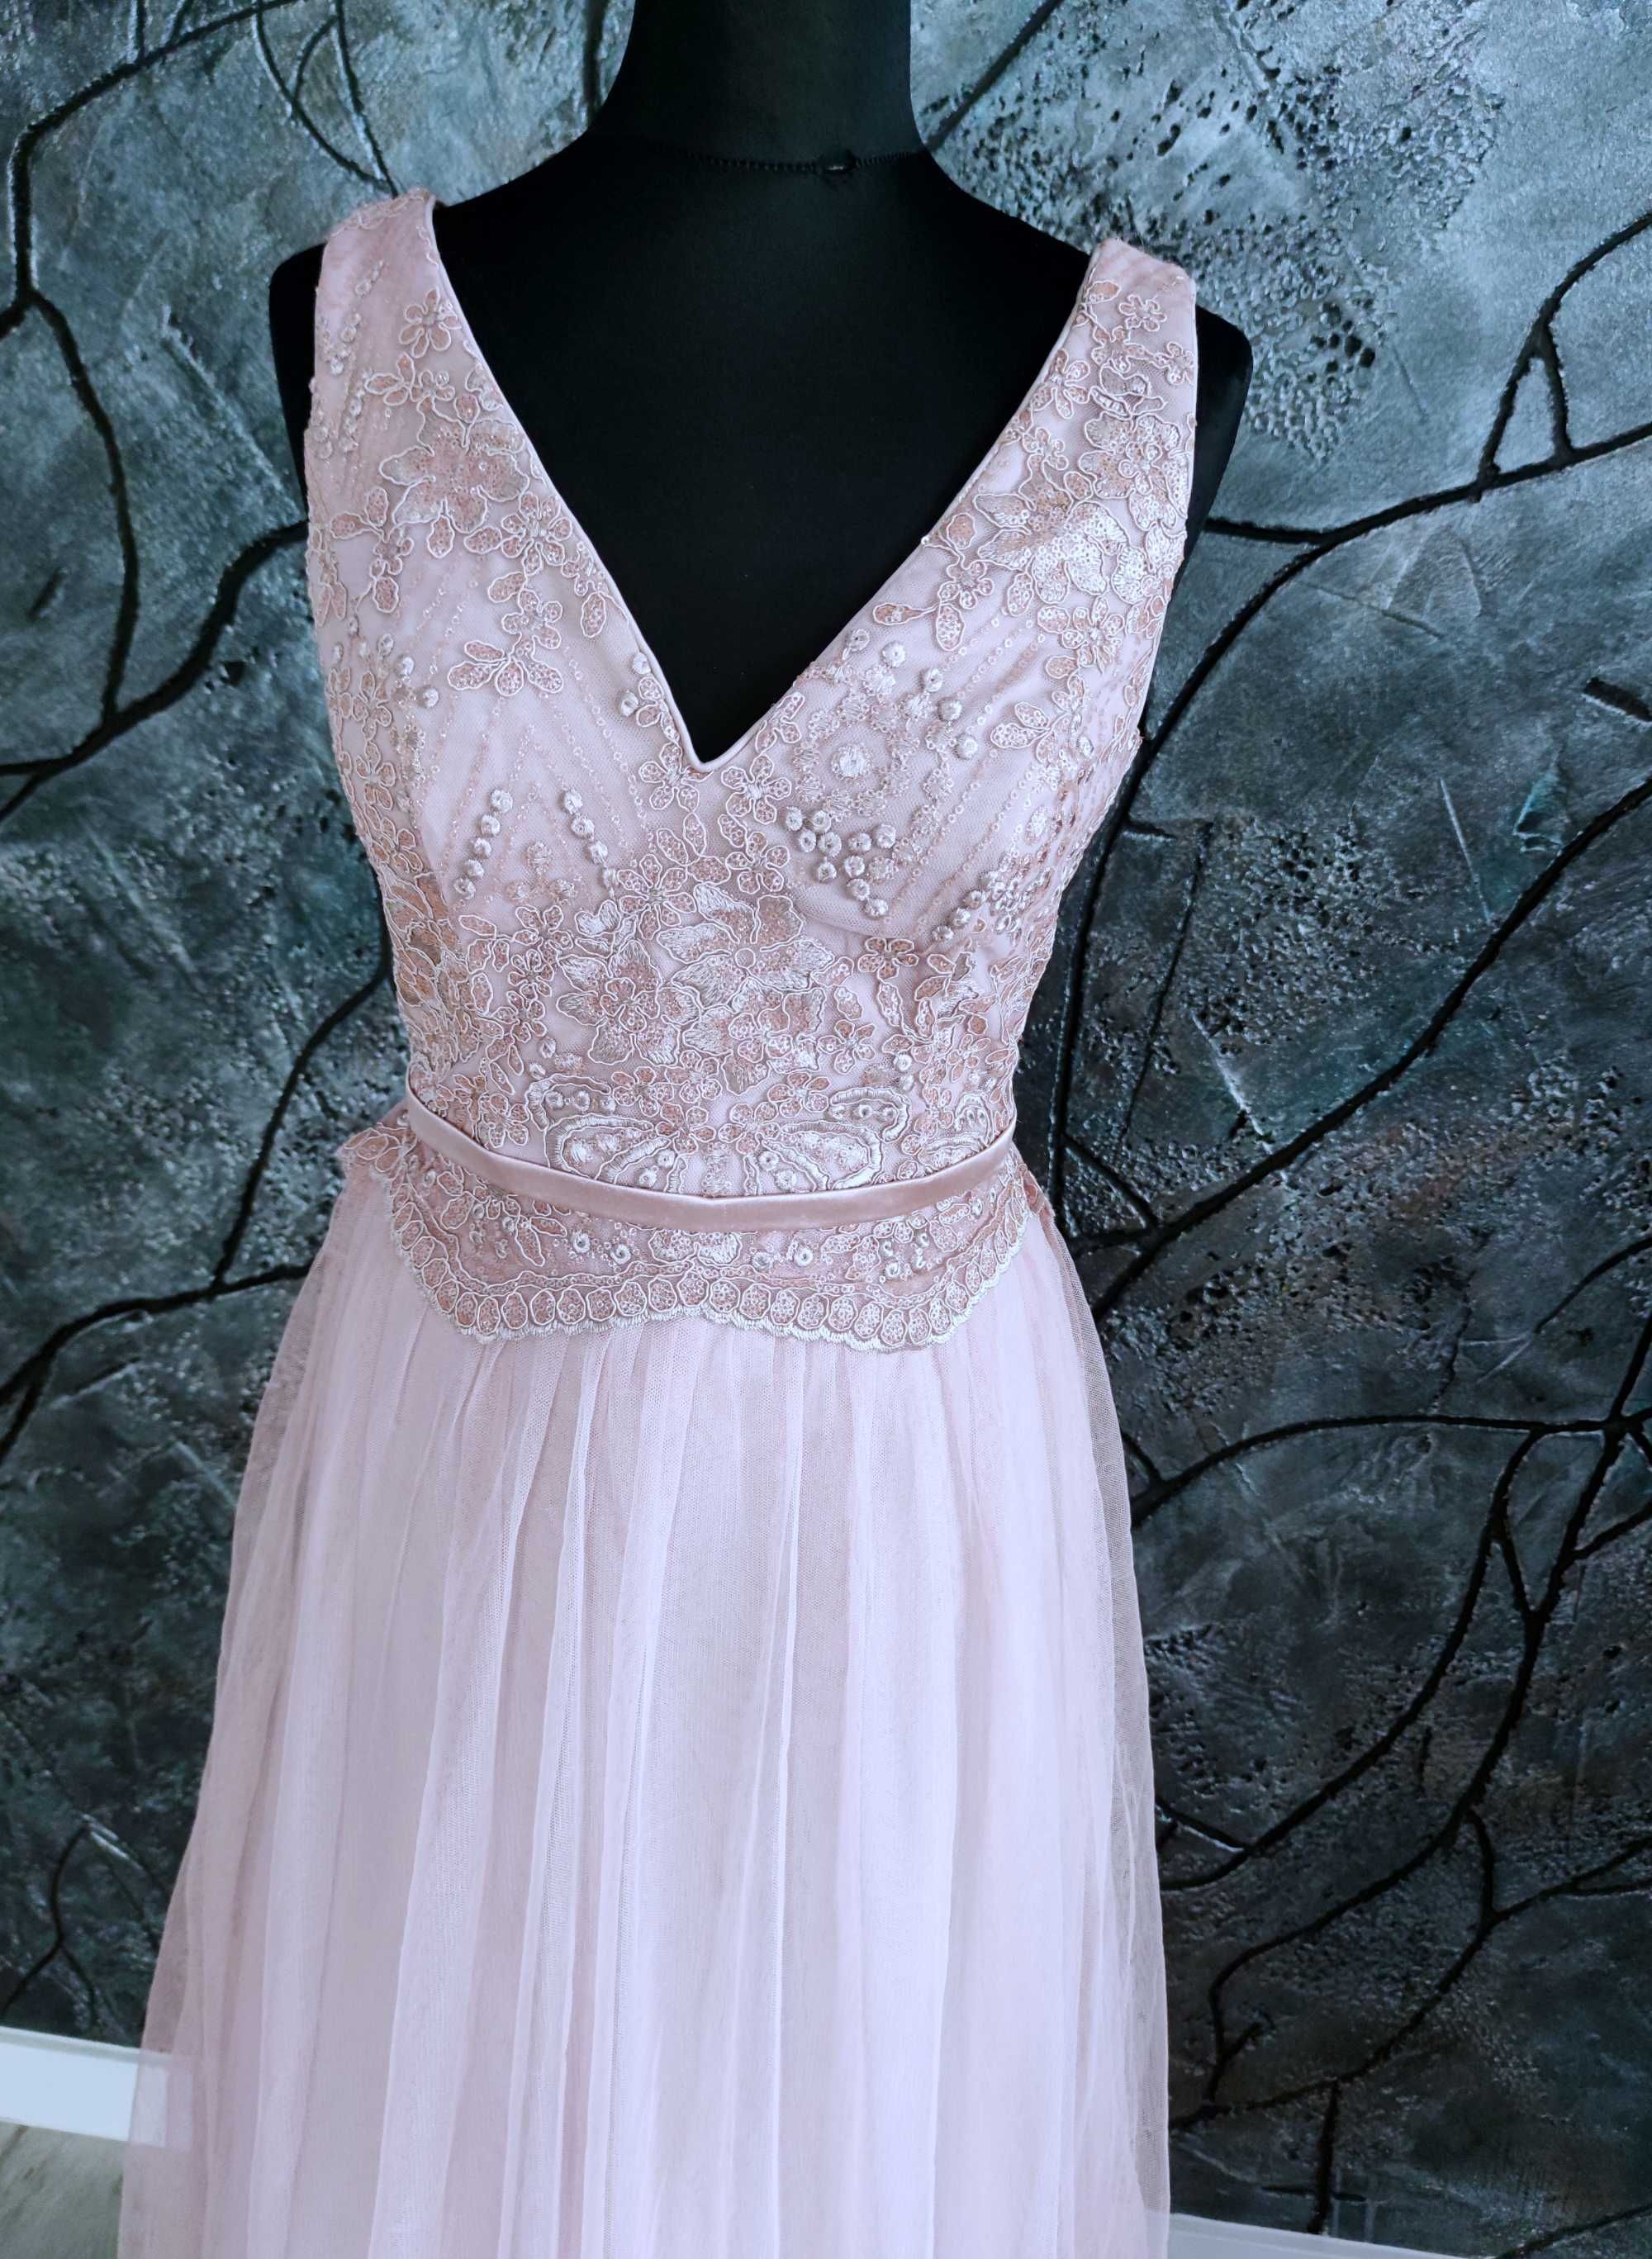 Długa tiulowa suknia balowa  koronkowa rozmiar m 38 z koronką ślubna